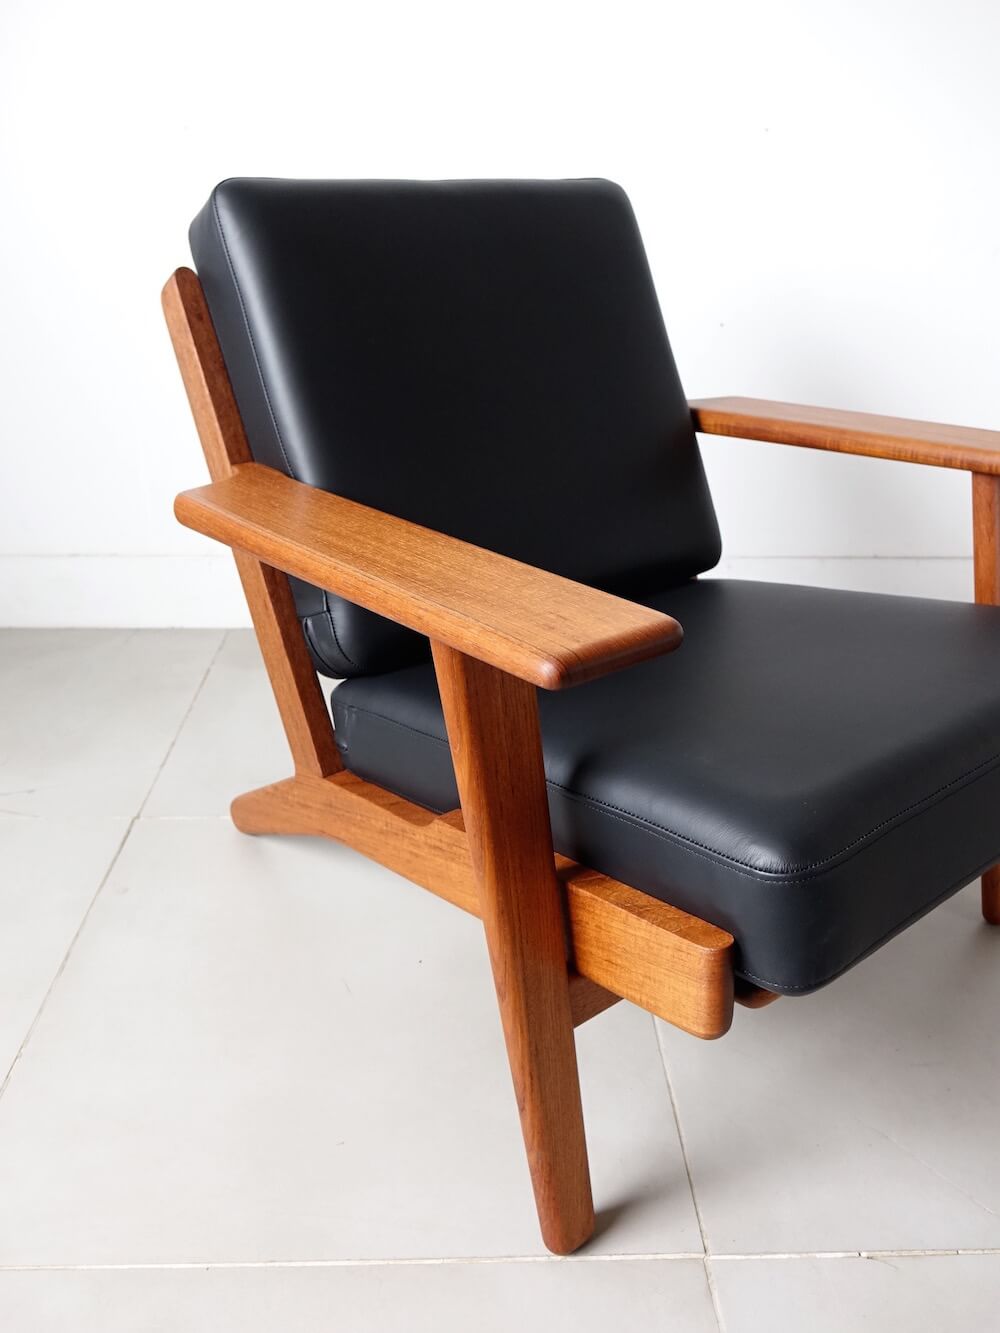 Eazy chair “GE290" by Hans J. Wegner in teak